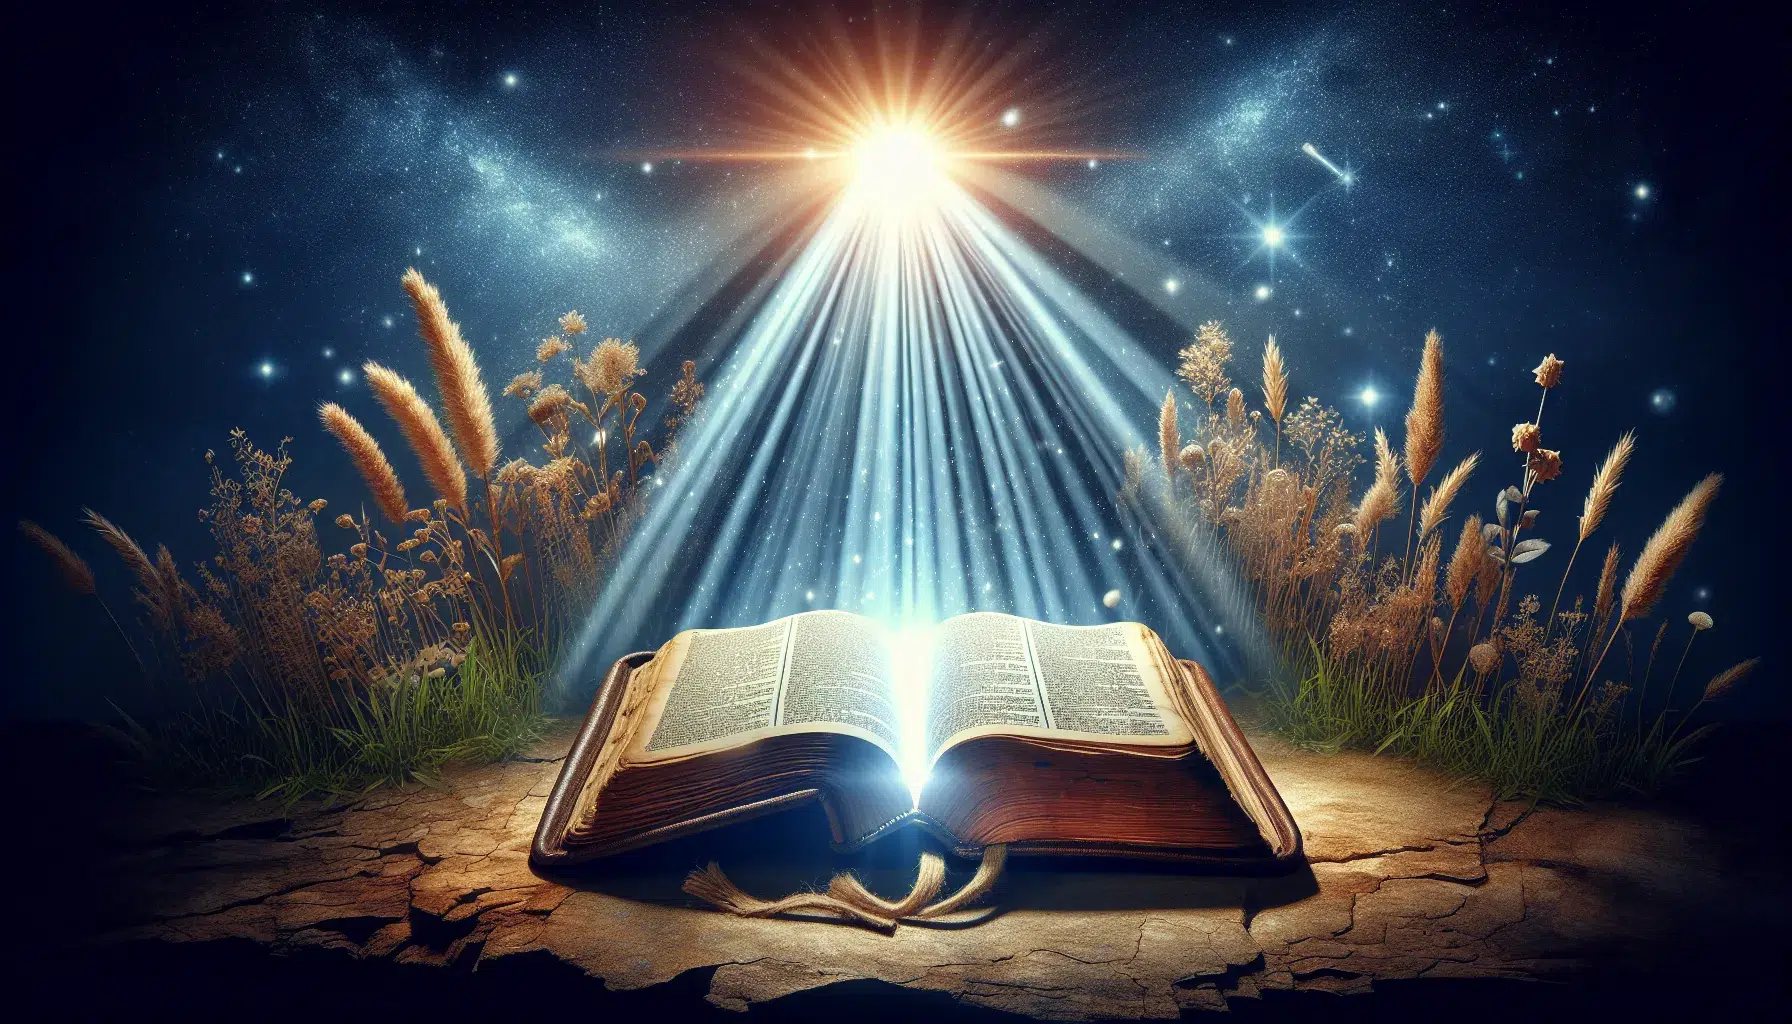 Representación visual de una luz brillante iluminando un libro antiguo